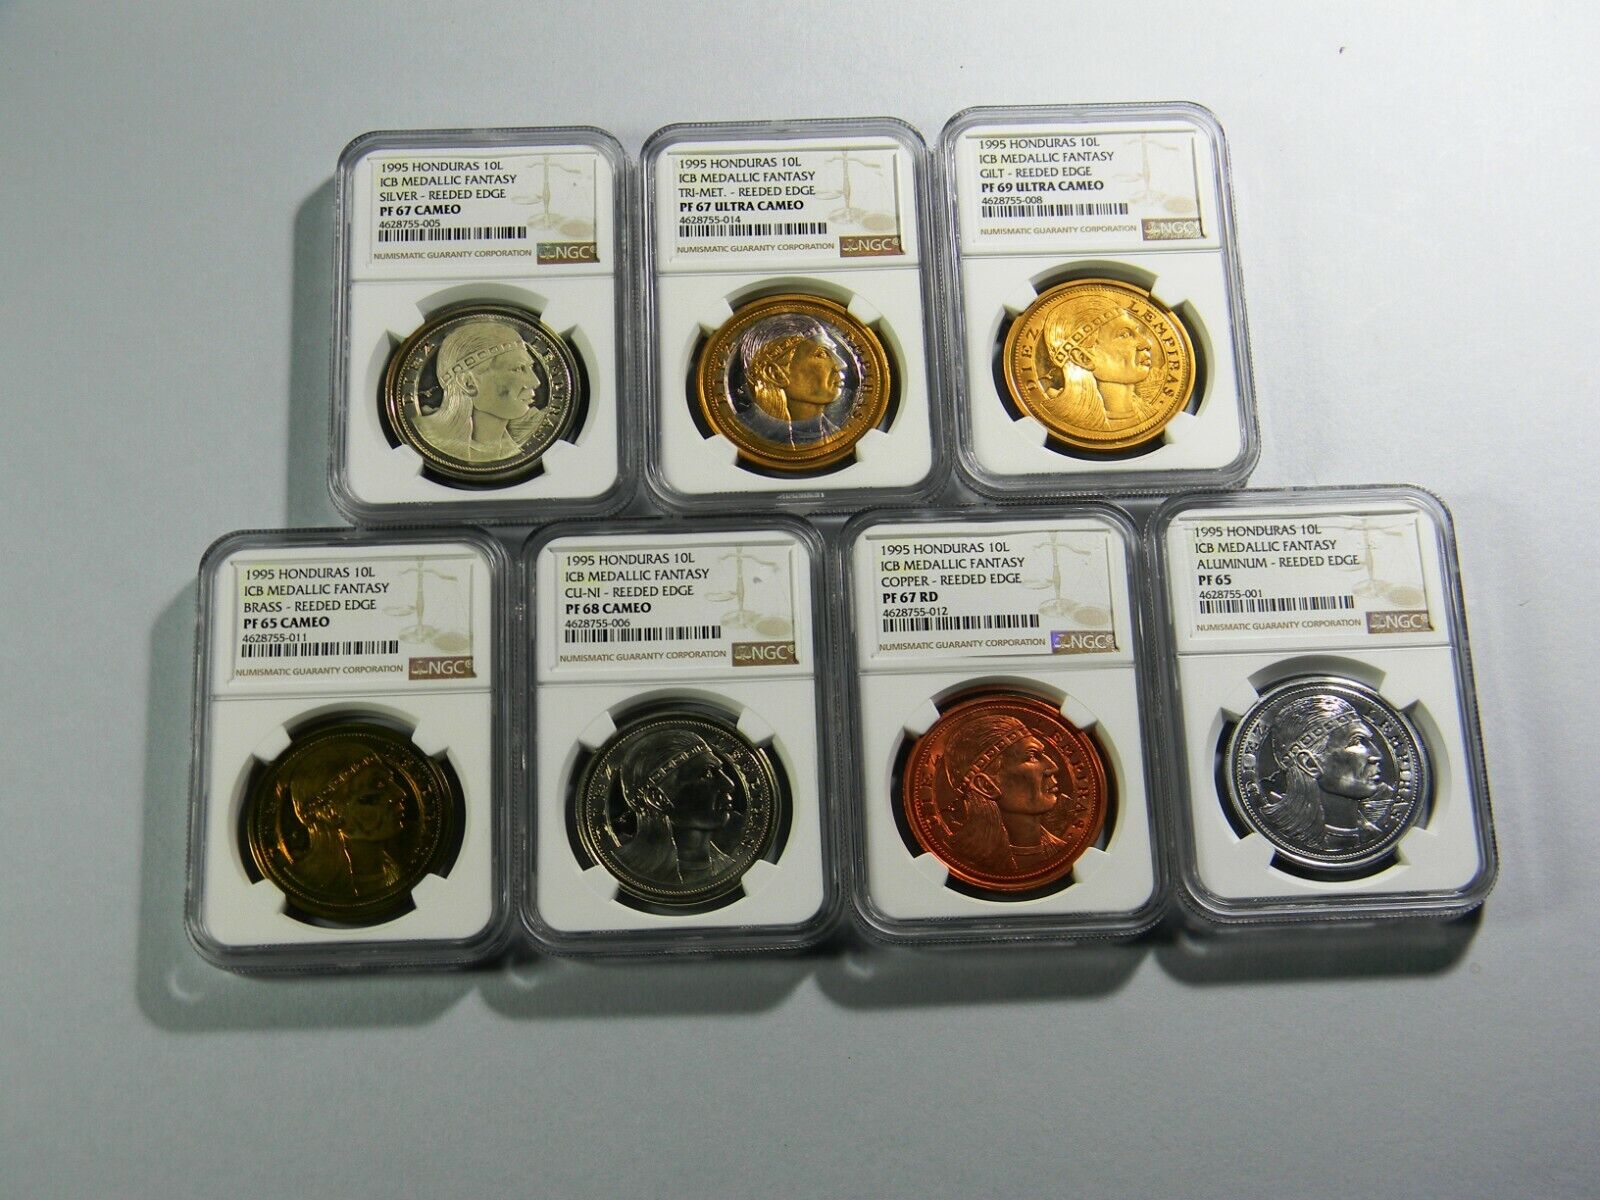 1995 Honduras 10 Lempiras 7 coin Lot NGC Certified  Без бренда